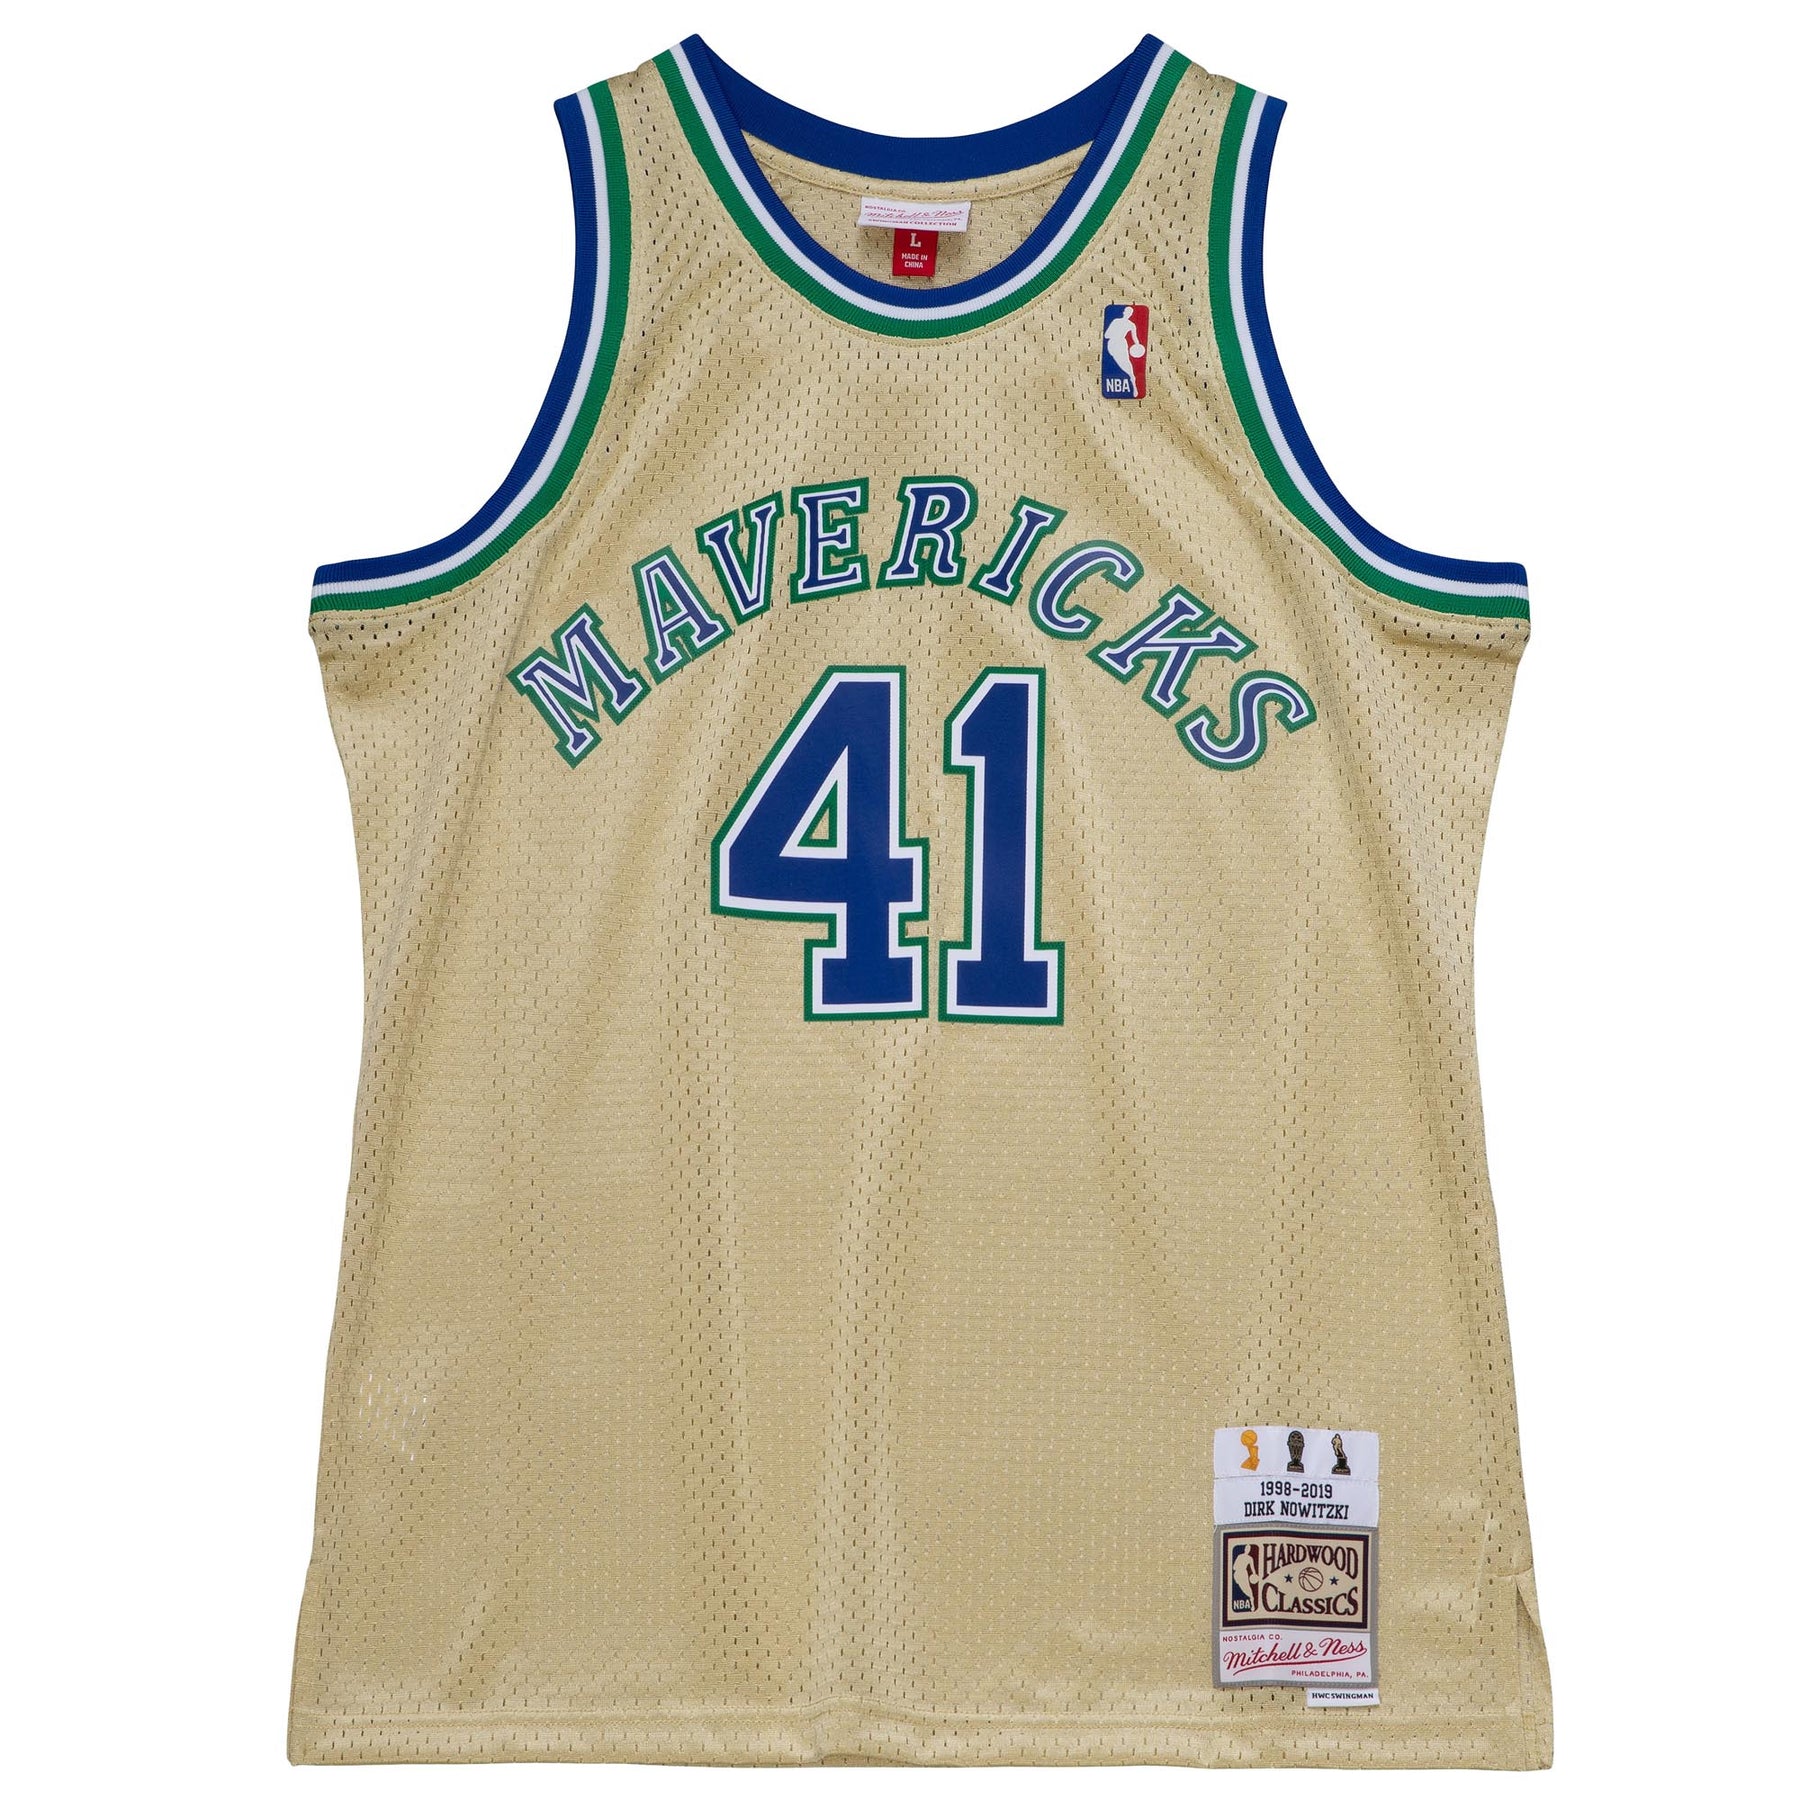 NBA Swingman Jersey Dallas Mavericks Road 1998-99 Dirk Nowitzki